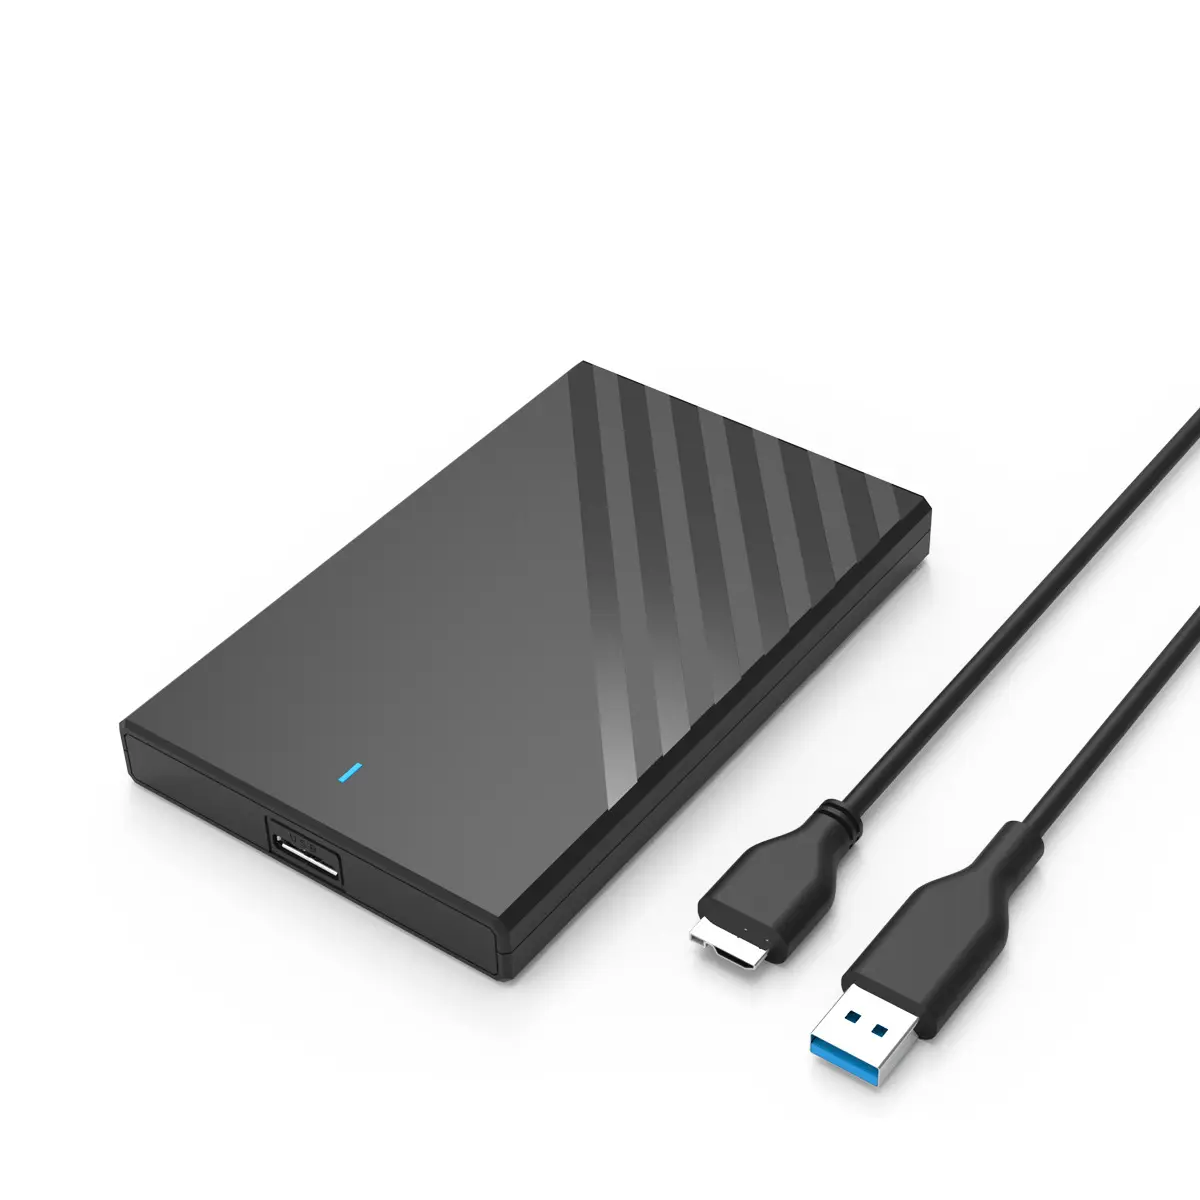 2.5 inç USB3.0 arayüzü taşınabilir harici SSD yüksek hızlı vidasız kurulum katı hal mekanik mobil sabit disk kutu